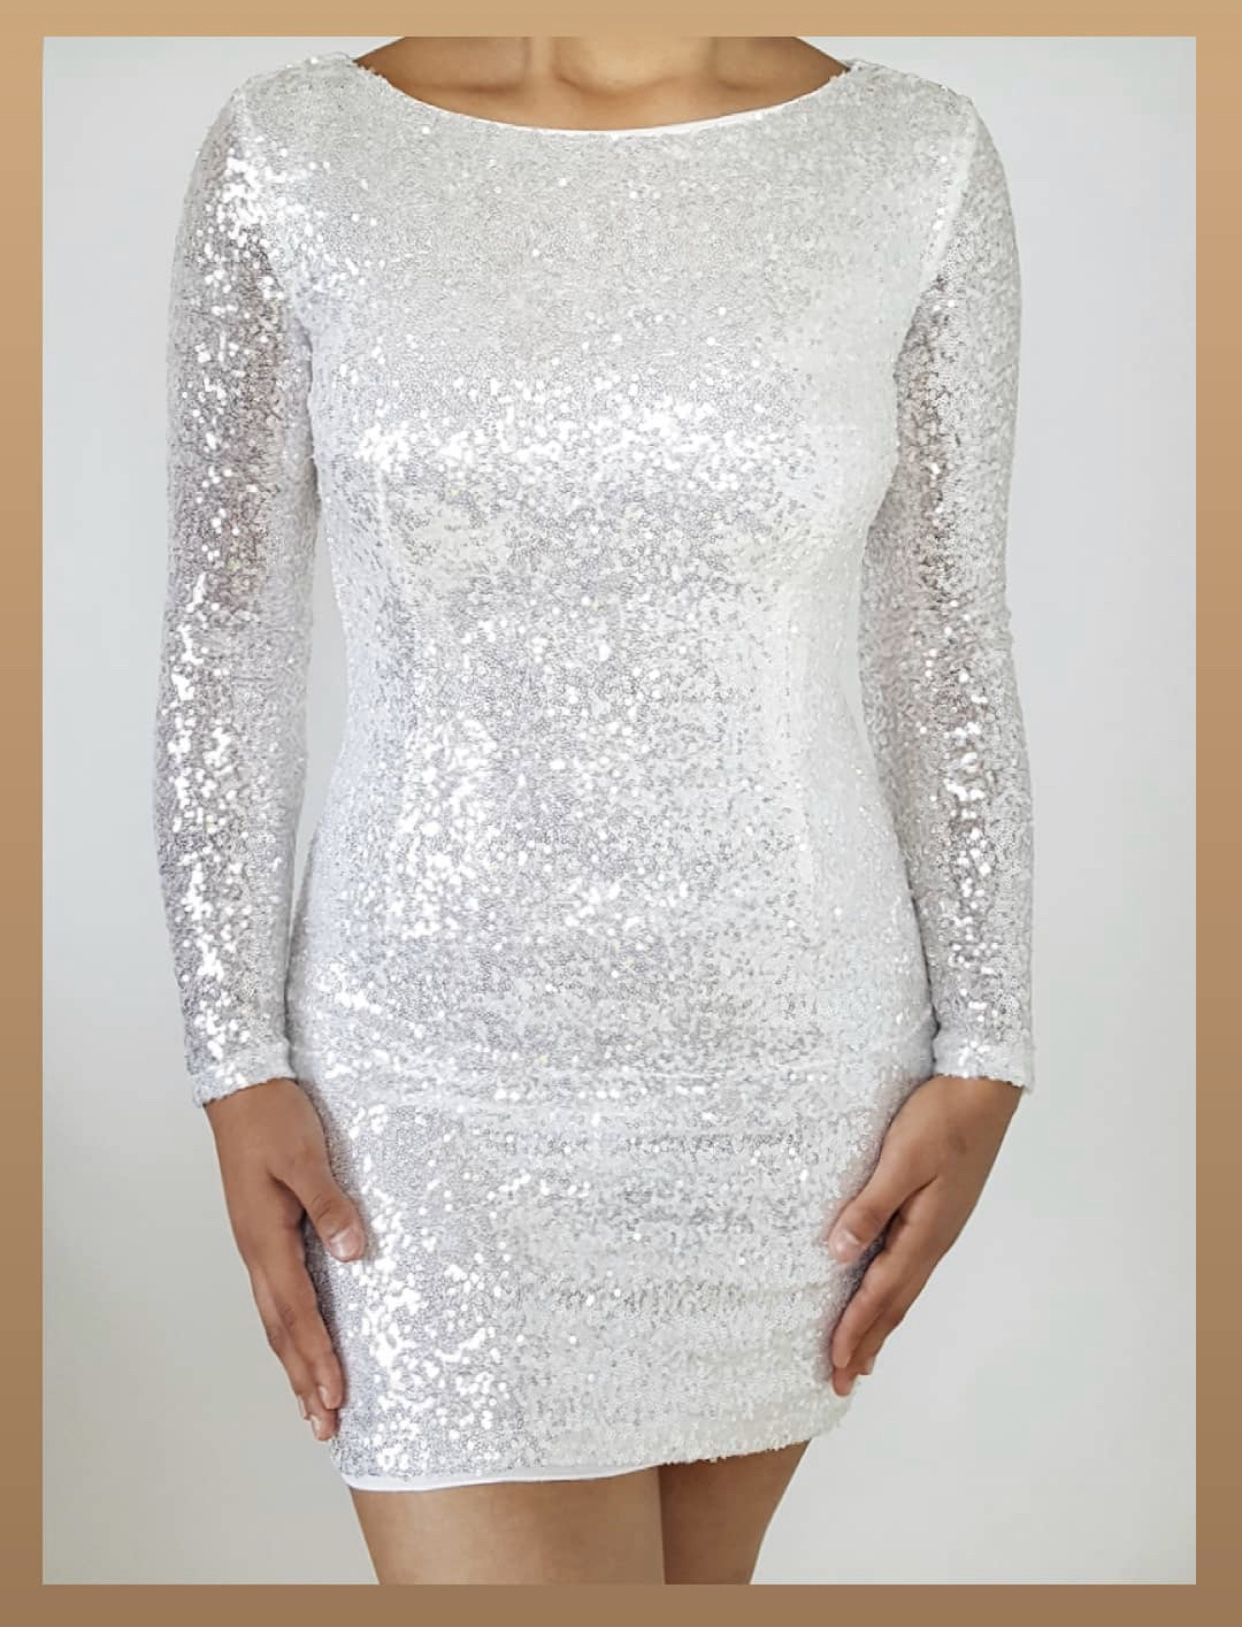 NEW White sequin dress